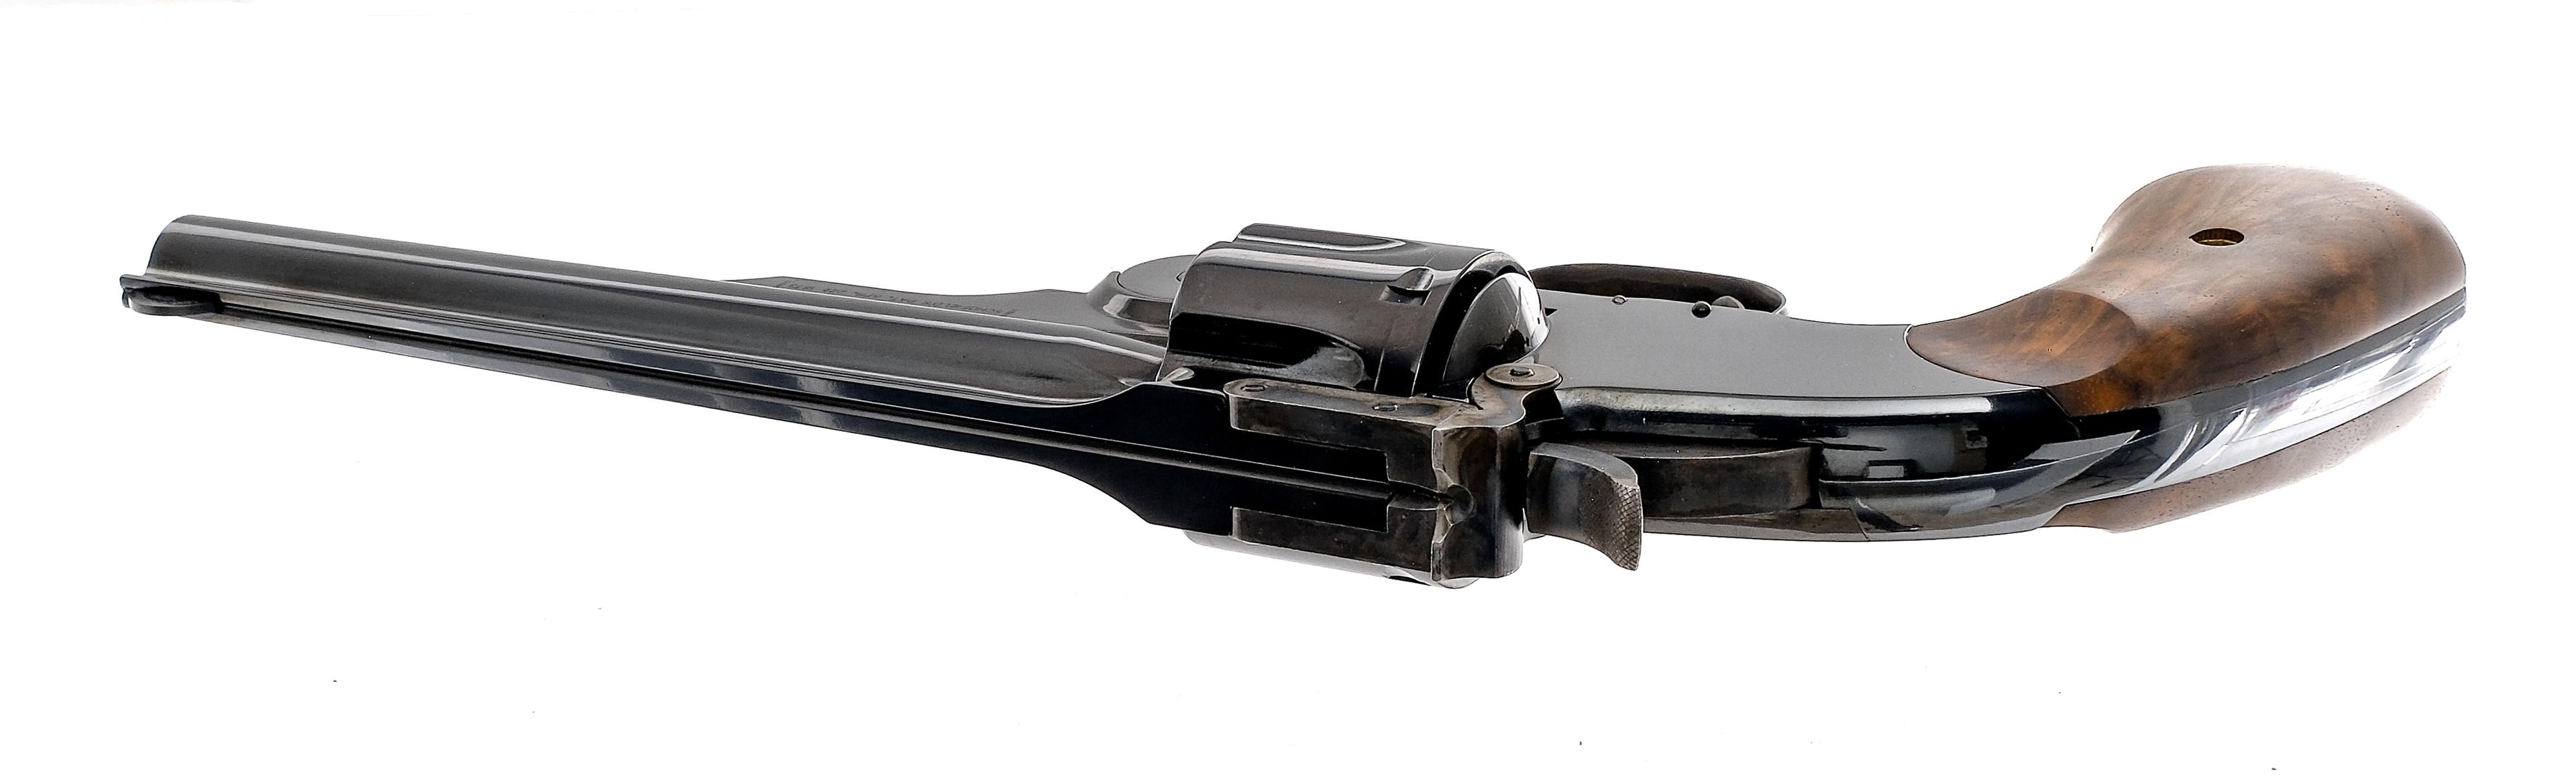 Smith & Wesson 3 Schofield .45 S&W Revolver